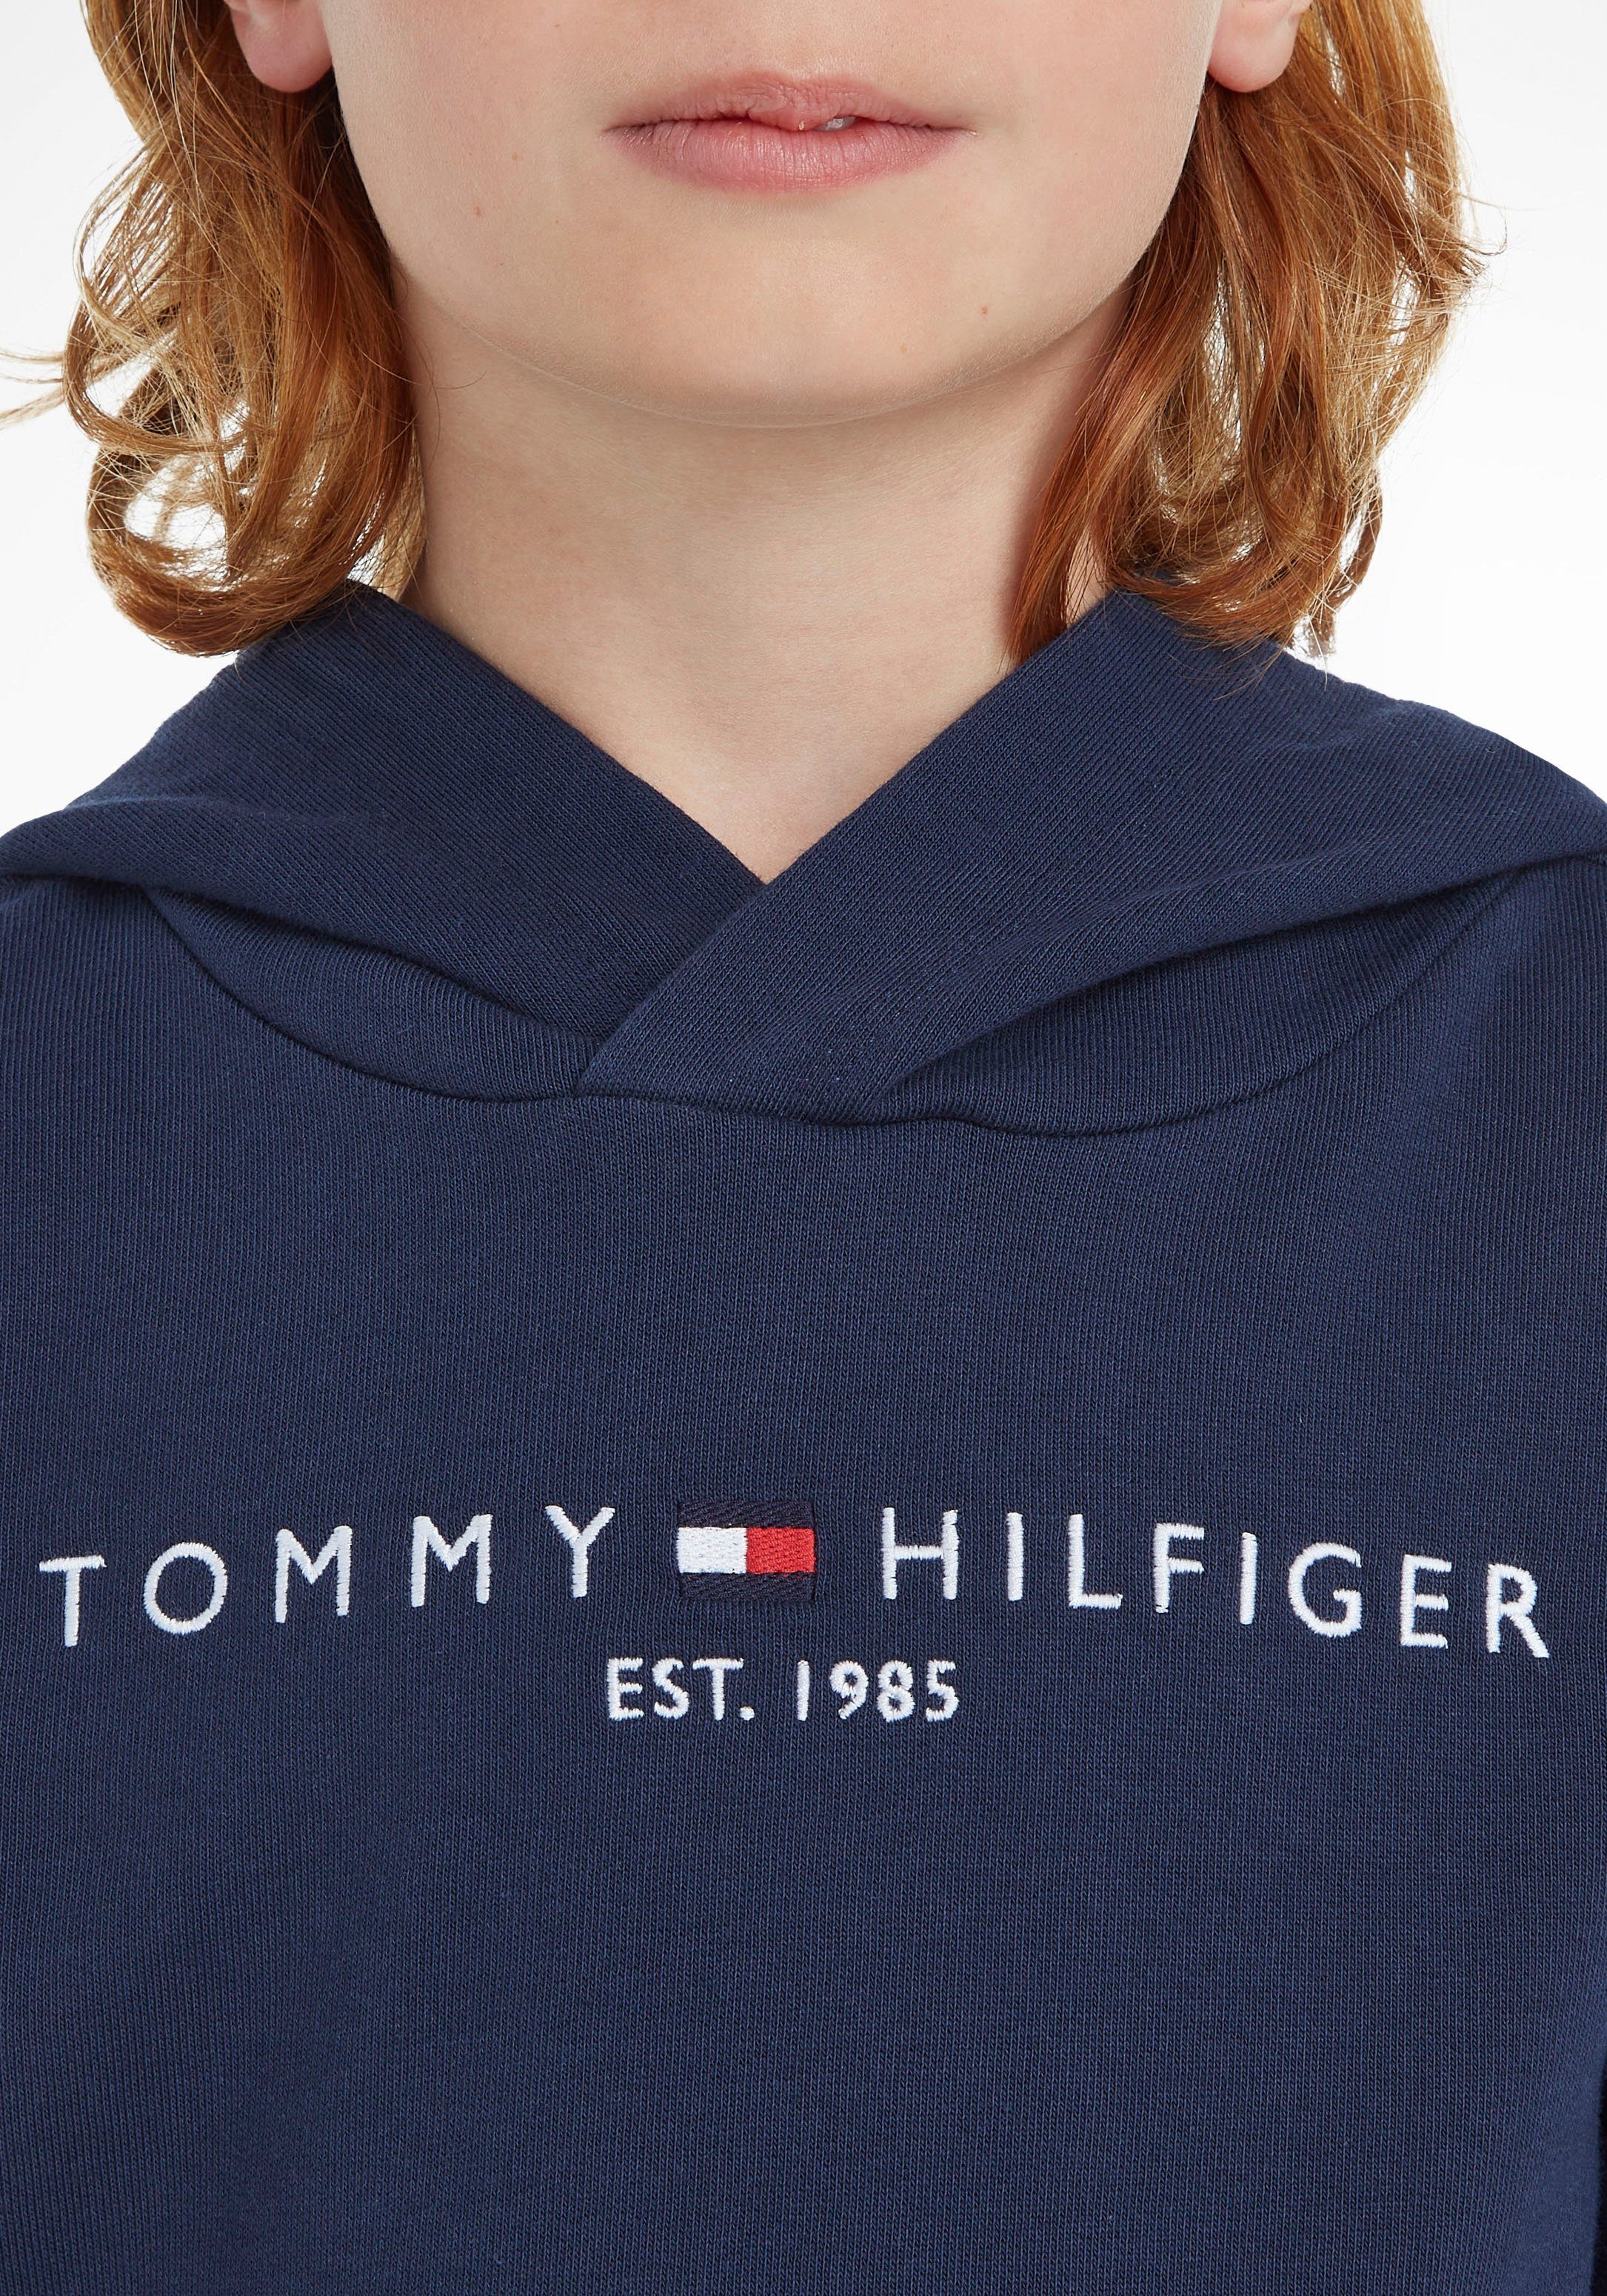 Tommy Hilfiger Kapuzensweatshirt ESSENTIAL Mädchen Kinder HOODIE Kids und Jungen MiniMe,für Junior